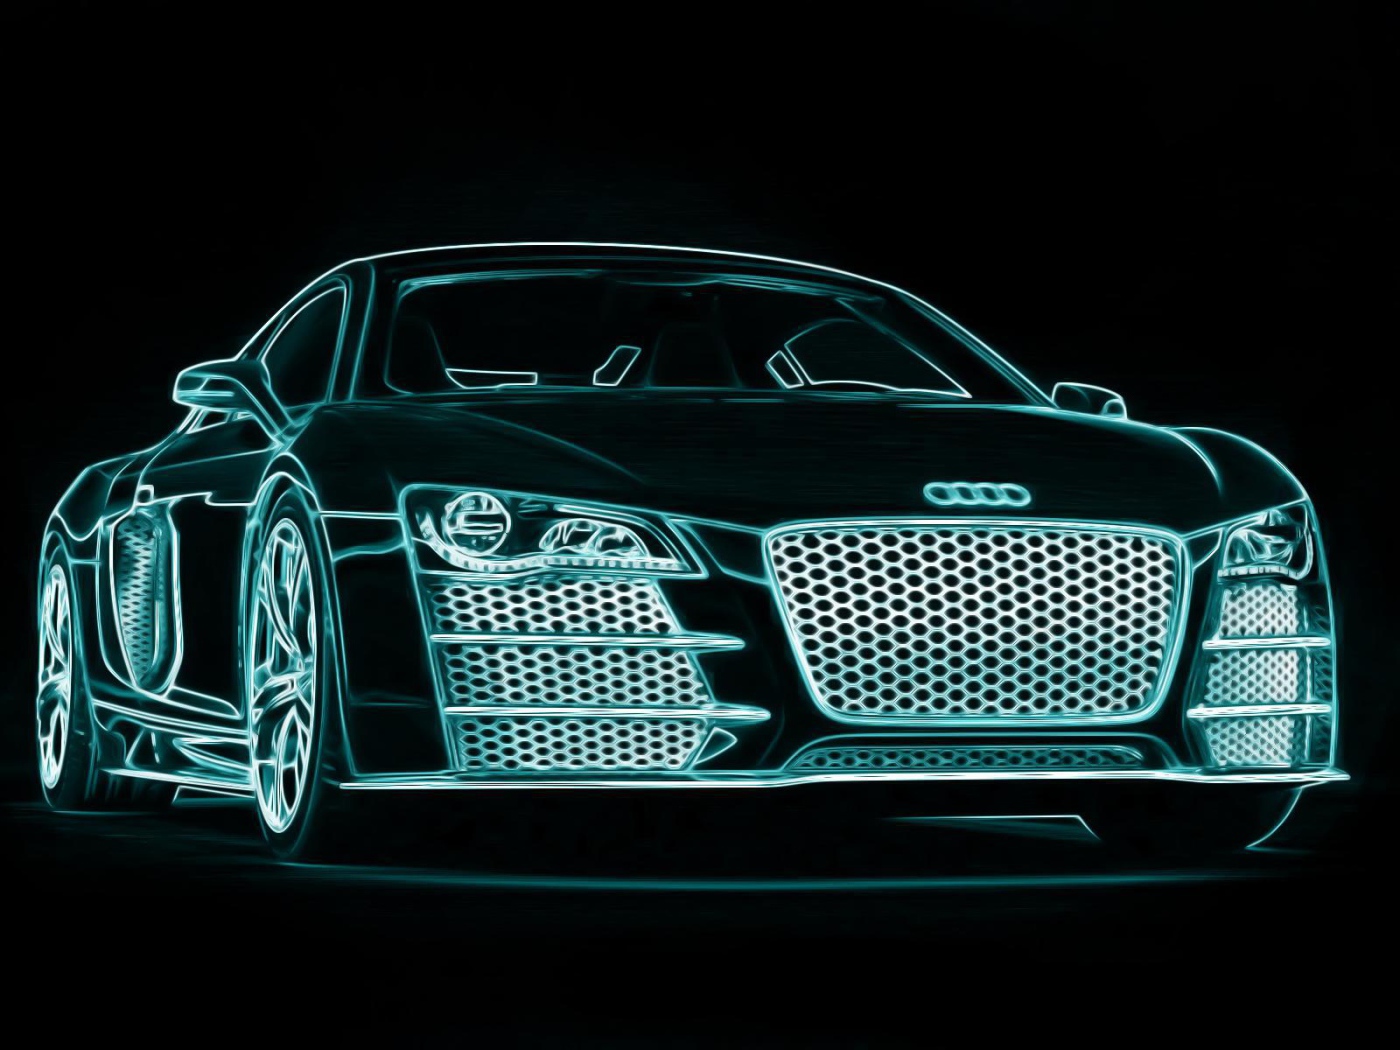 The Neon Audi